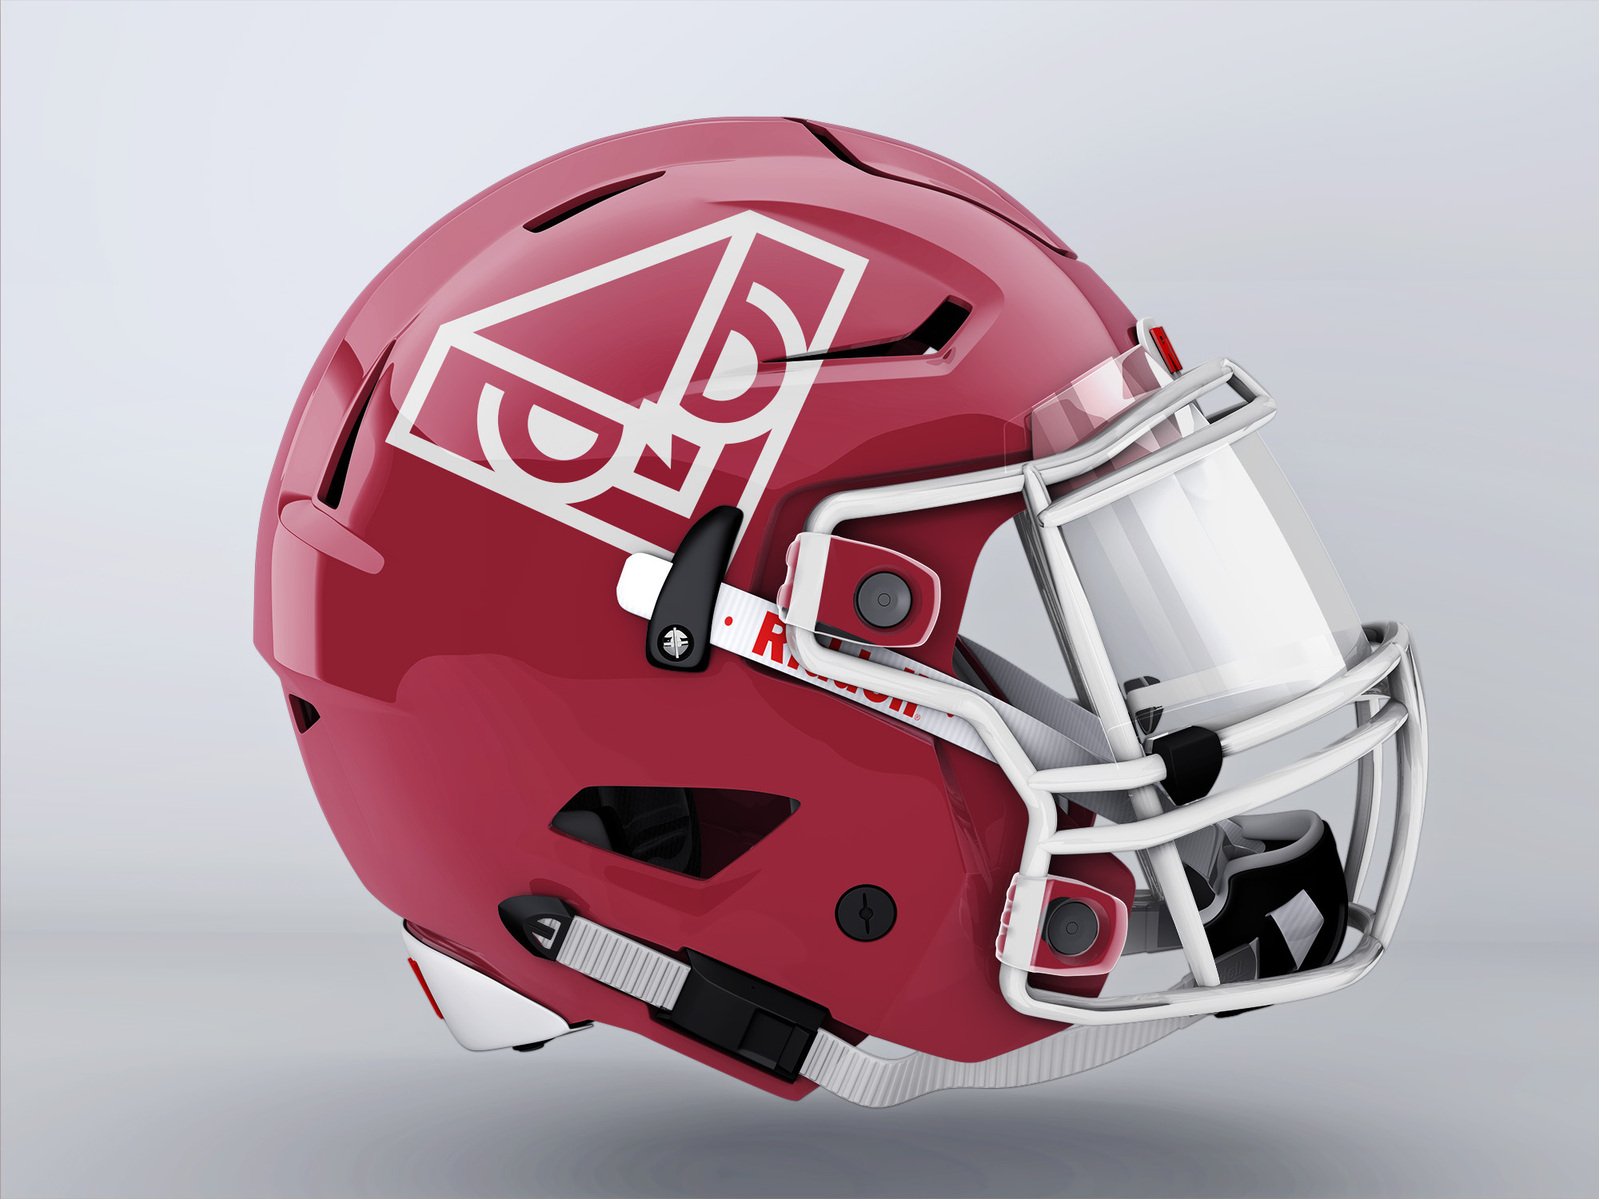 Proposed Temple Owl logo on football helmet